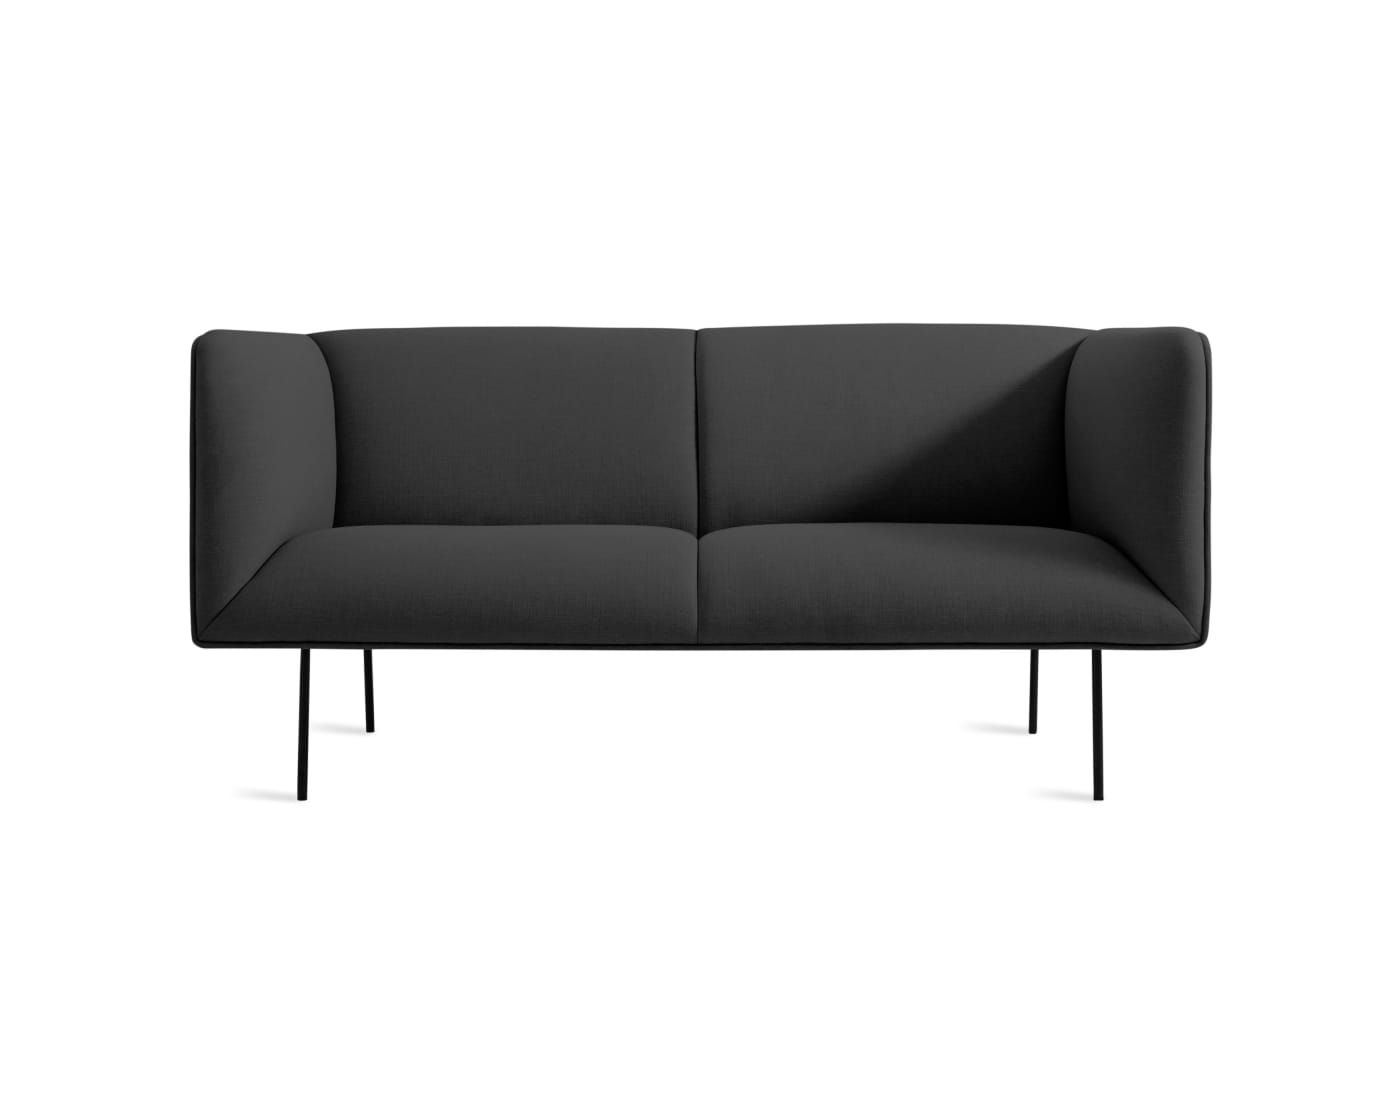 Dandy 70" Sofa